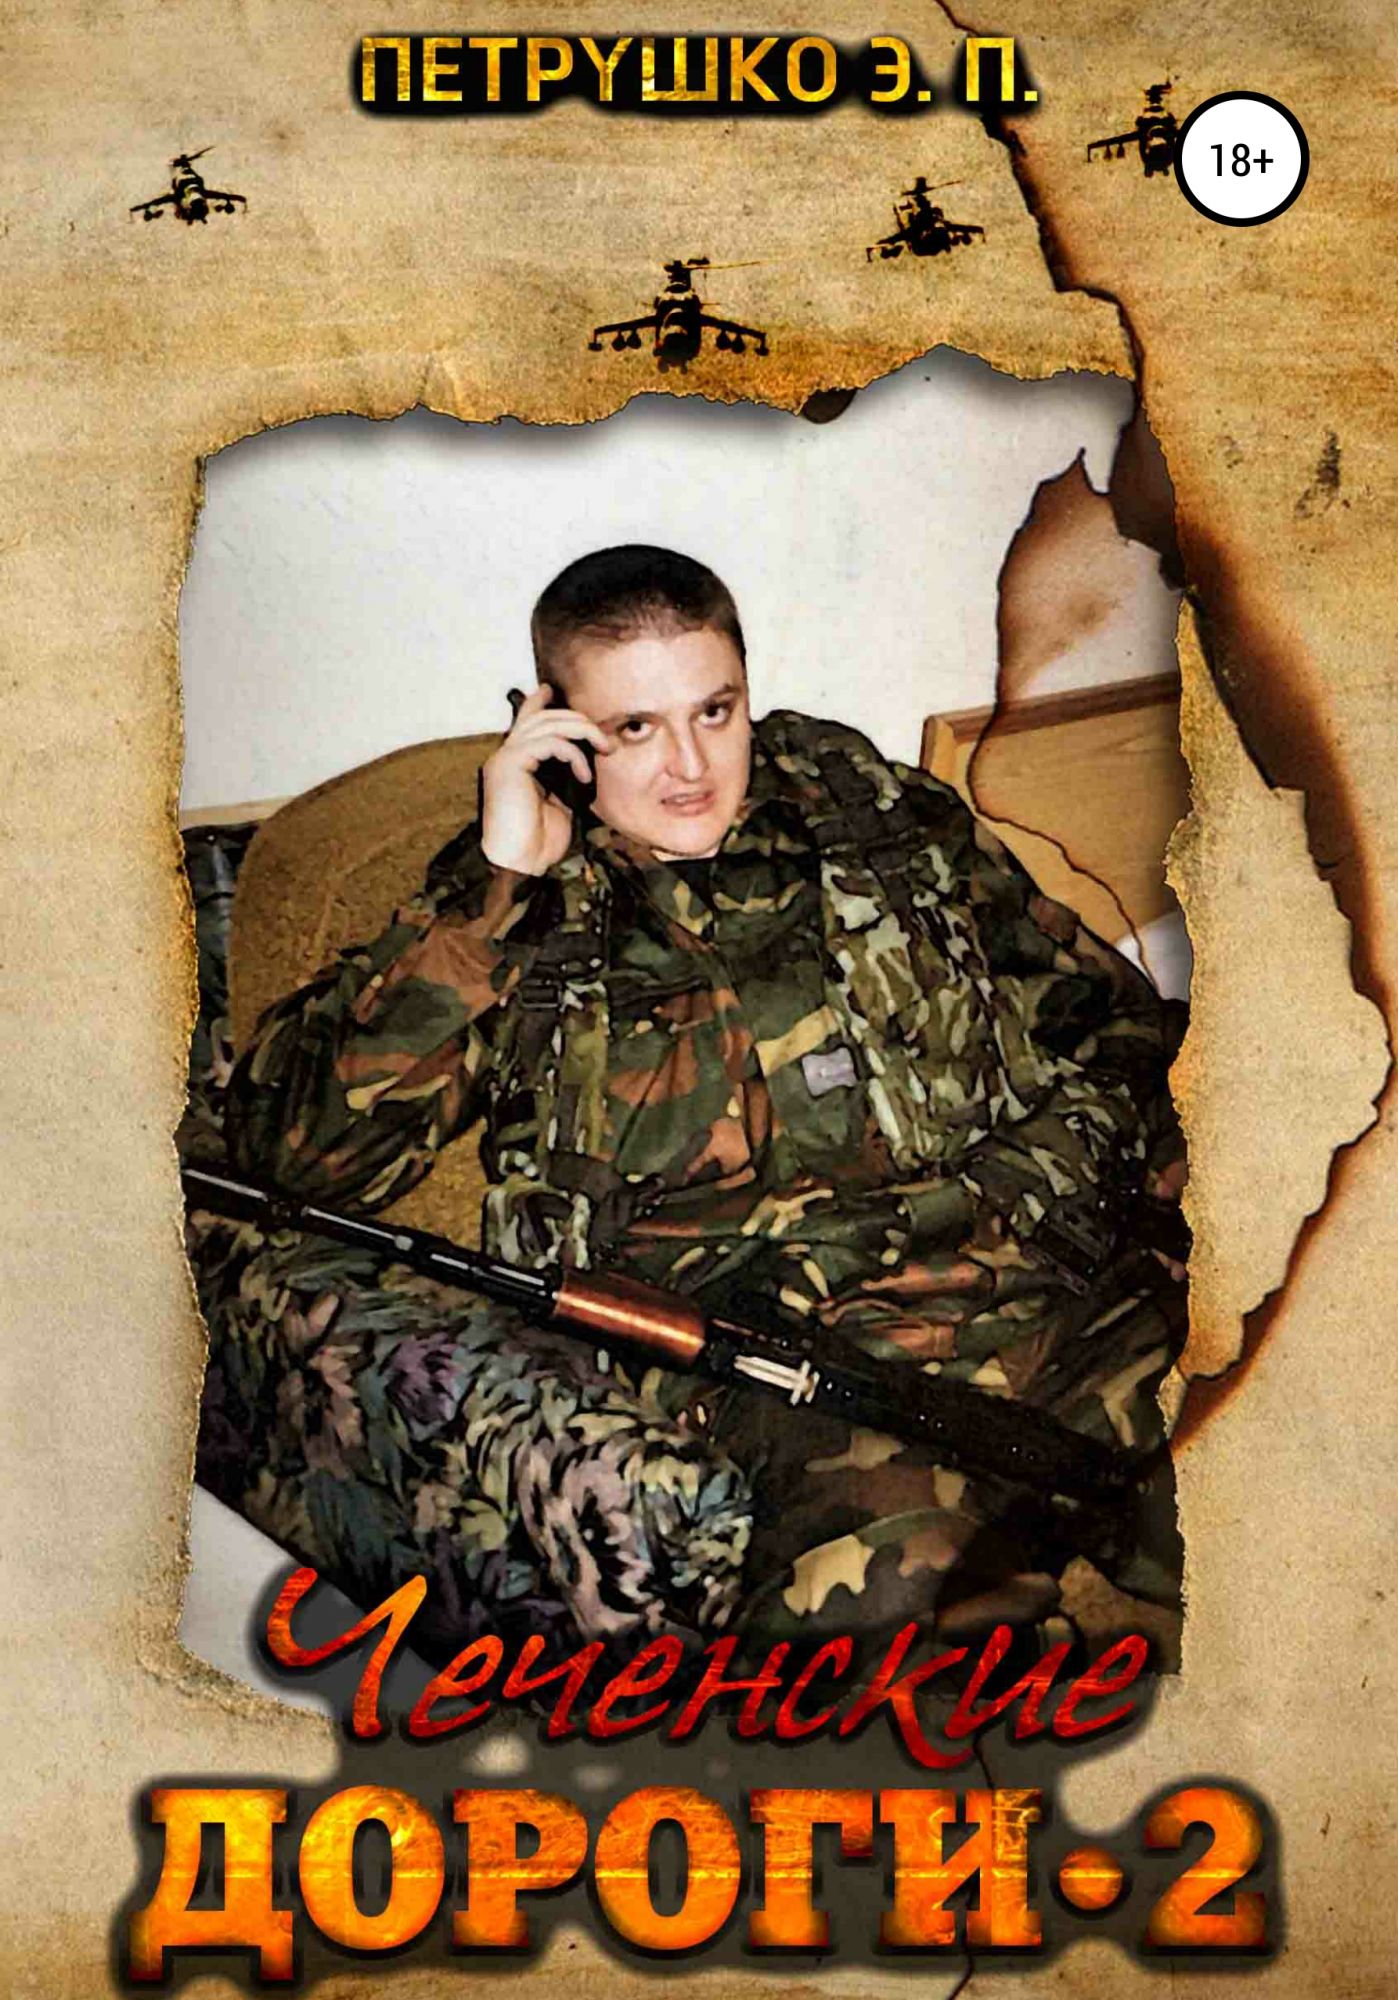 Читать чеченец 2 часть. Книги о Чеченской войне. Книги о войне в Чечне. Книга про Чечню.